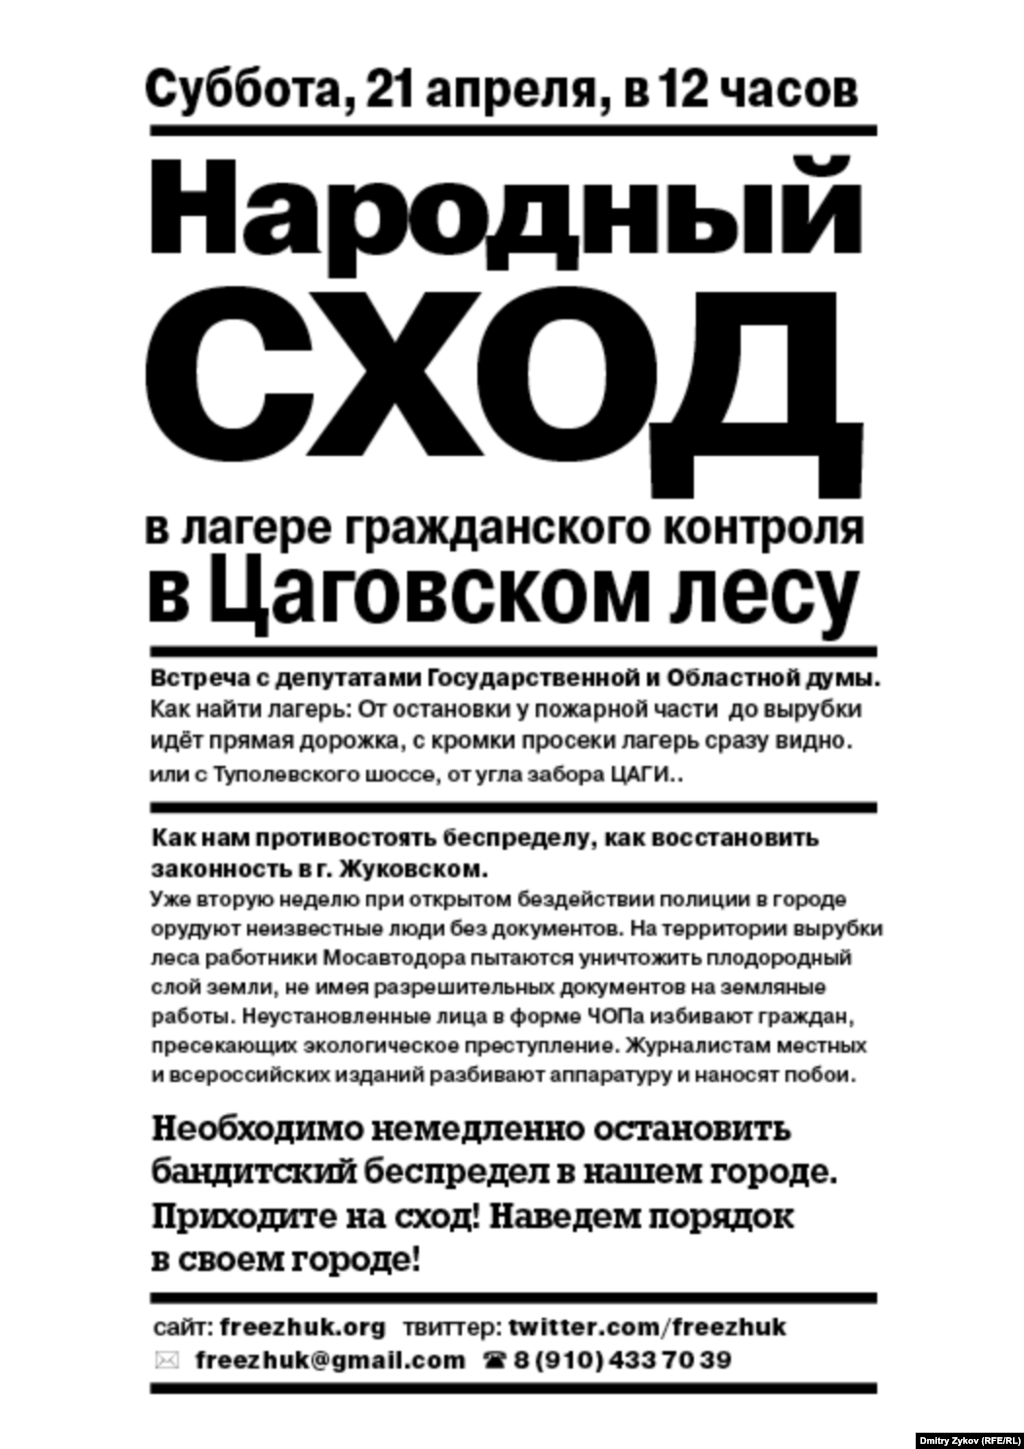 Листовка с призывом собраться на народный сход в защиту Цаговского леса